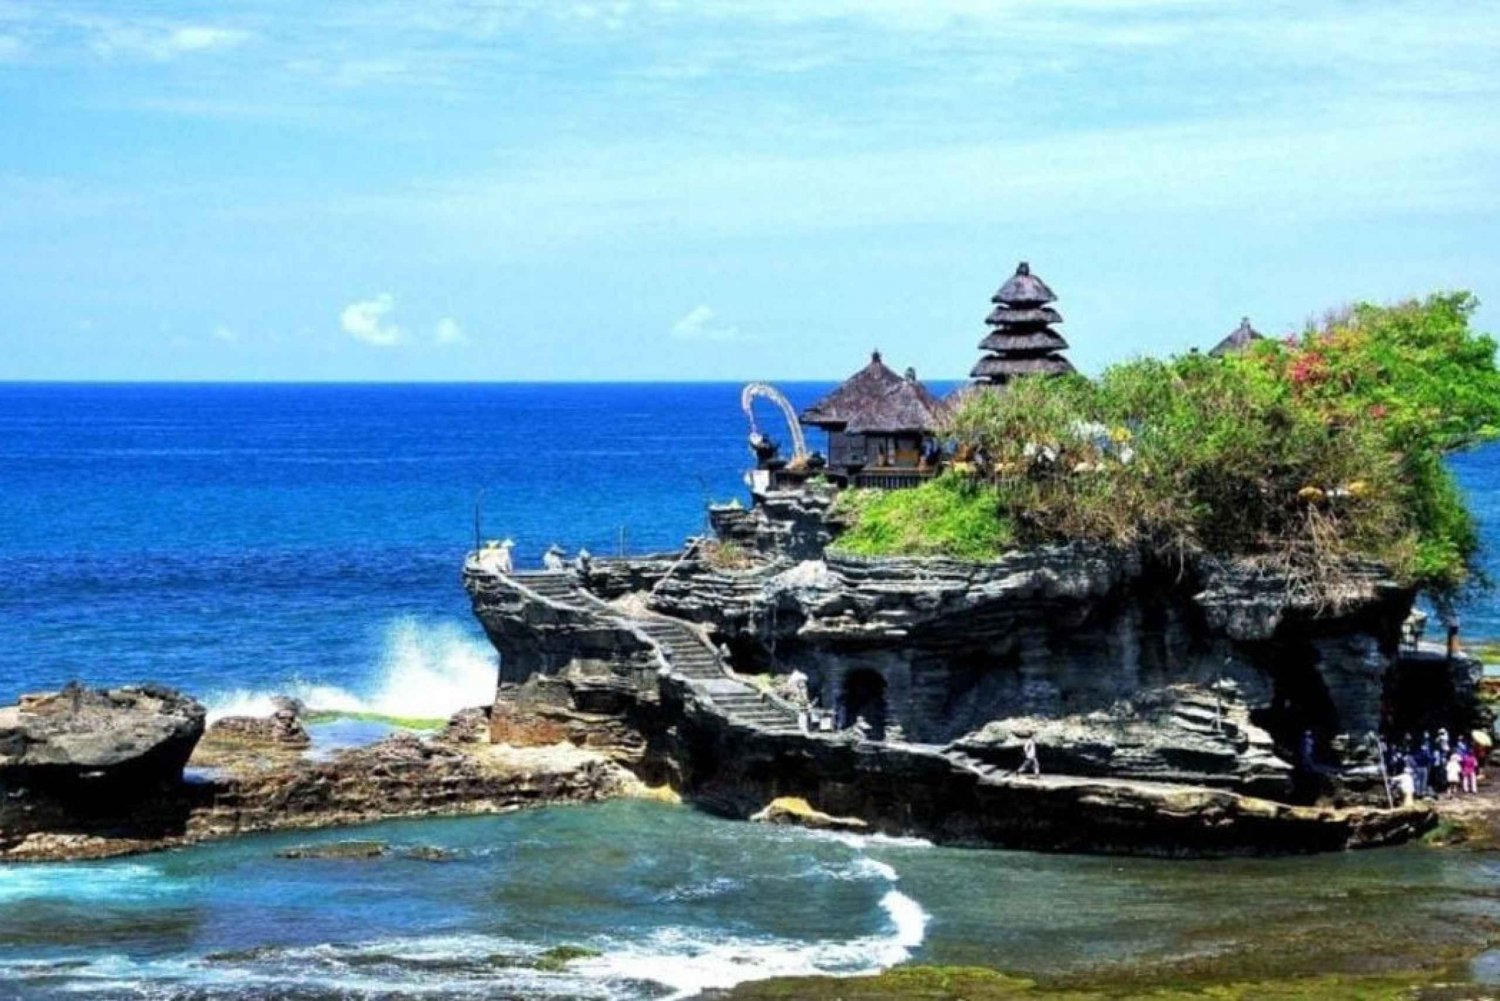 Bali: Tanah Lot-templet, Padang-padang-stranden, Kecak-dans